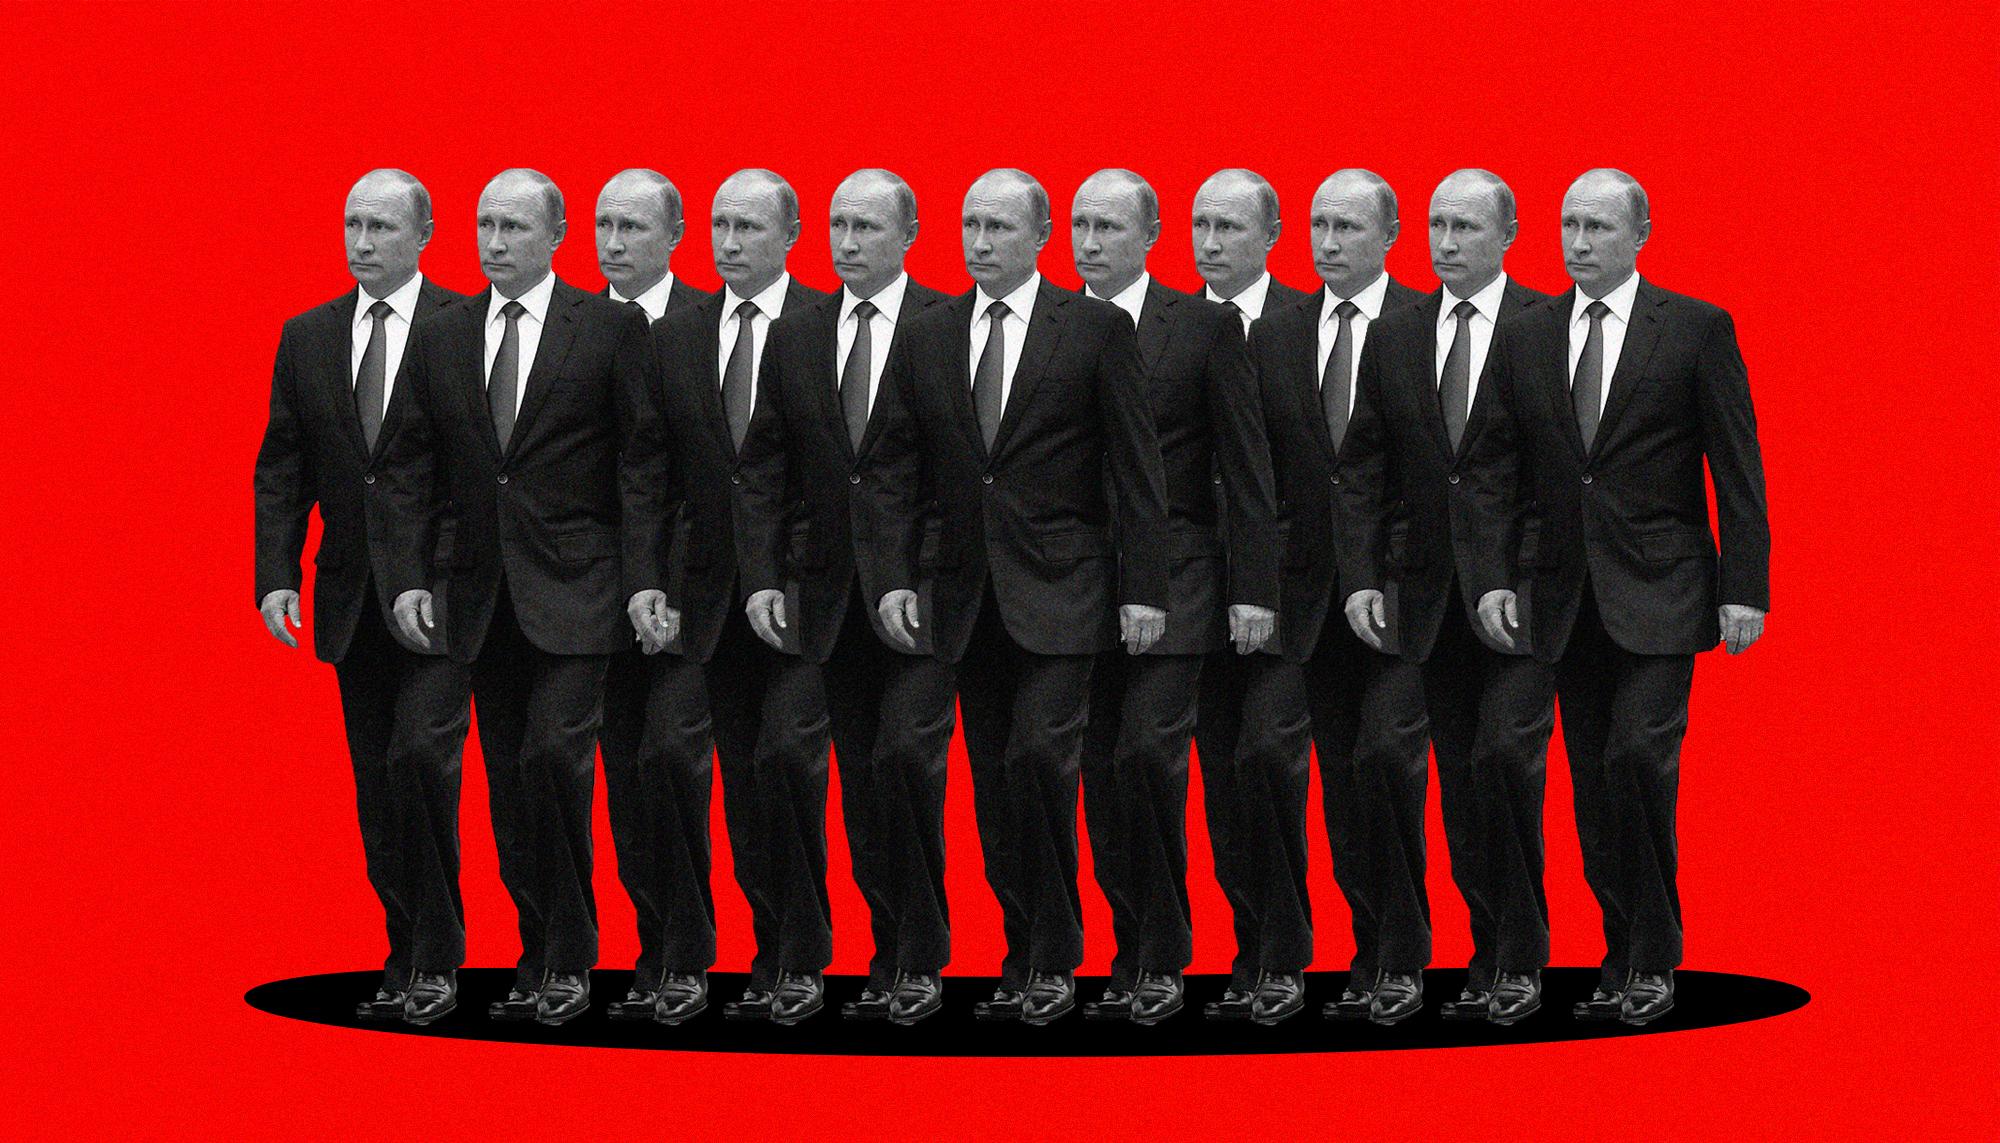 Putin clones